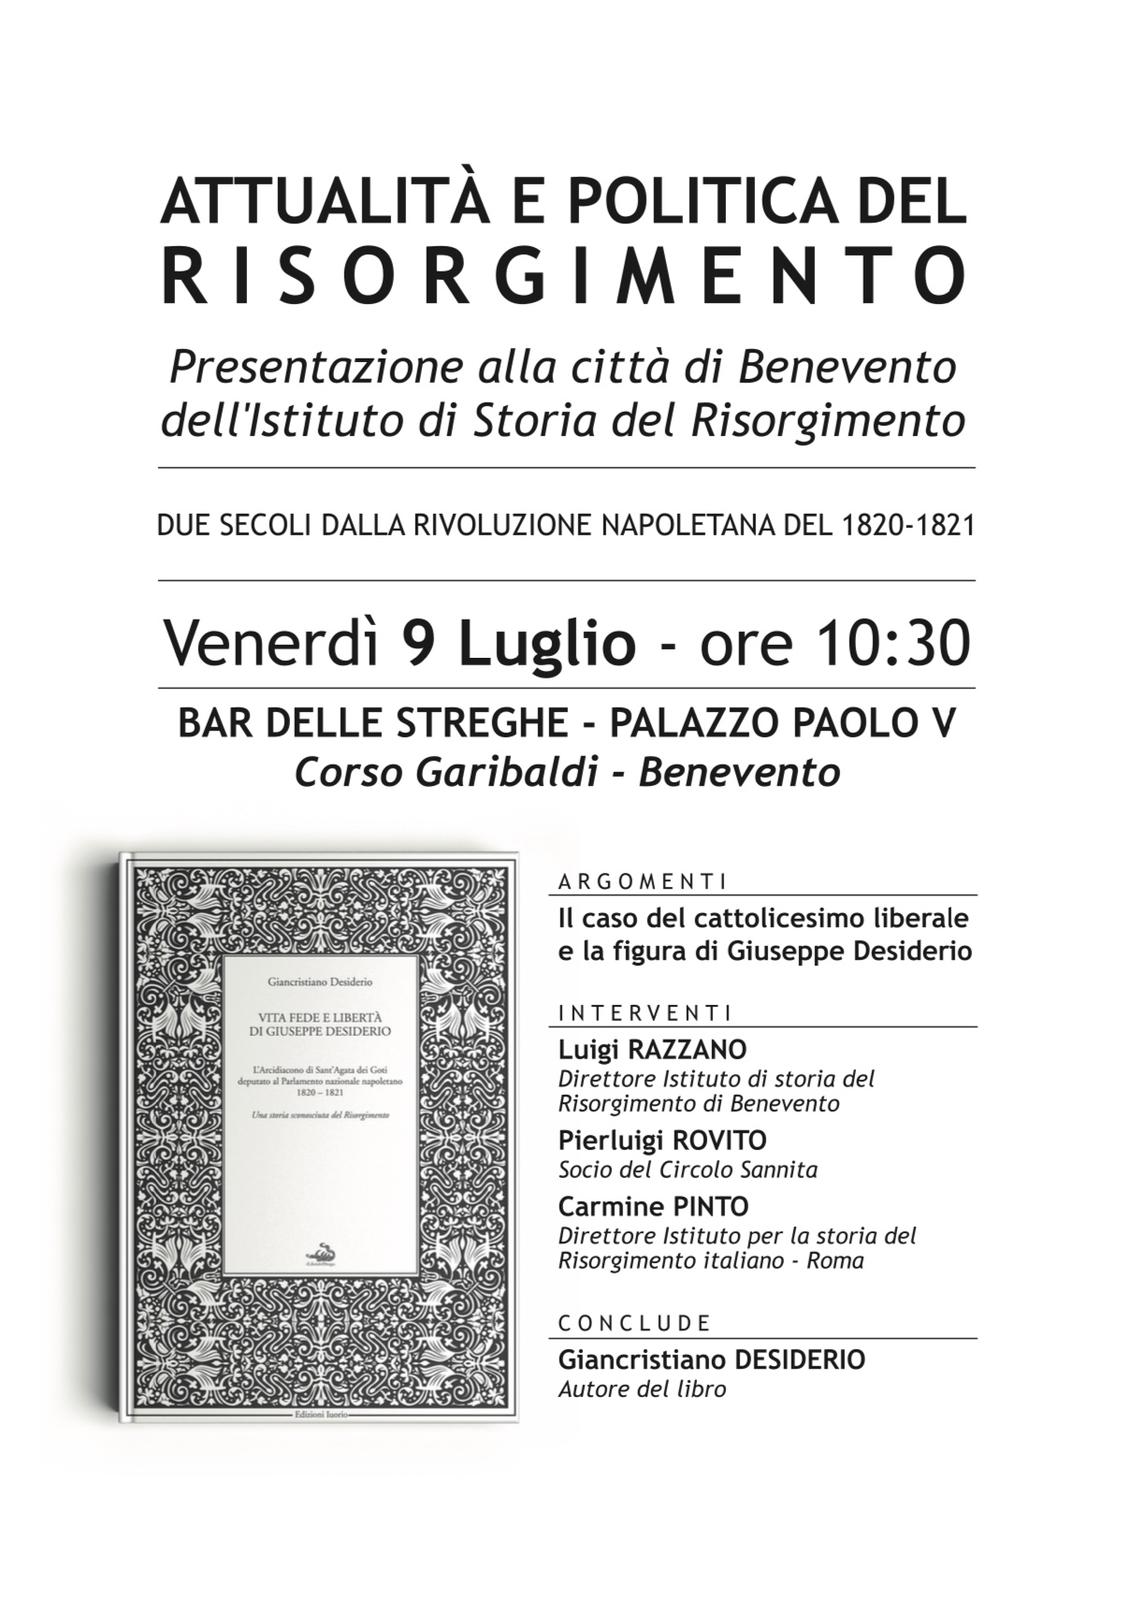 Benevento|Venerdì 9 luglio, presentazione dell’Istituto Storico del Risorgimento